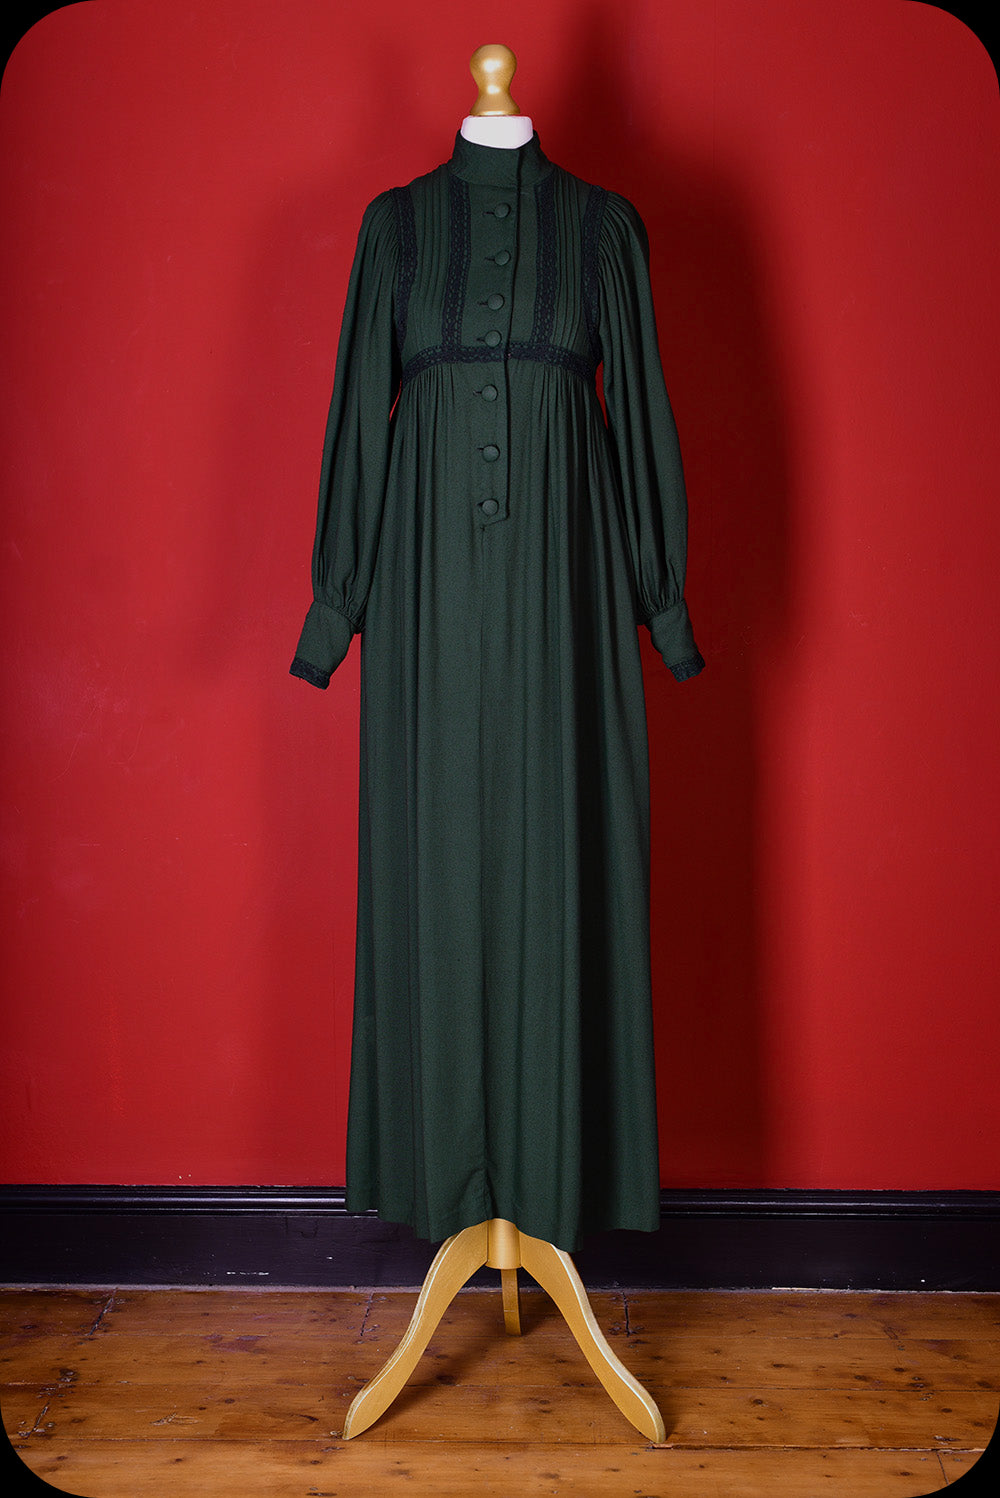 The WYTCHWOOD Vintage Dress